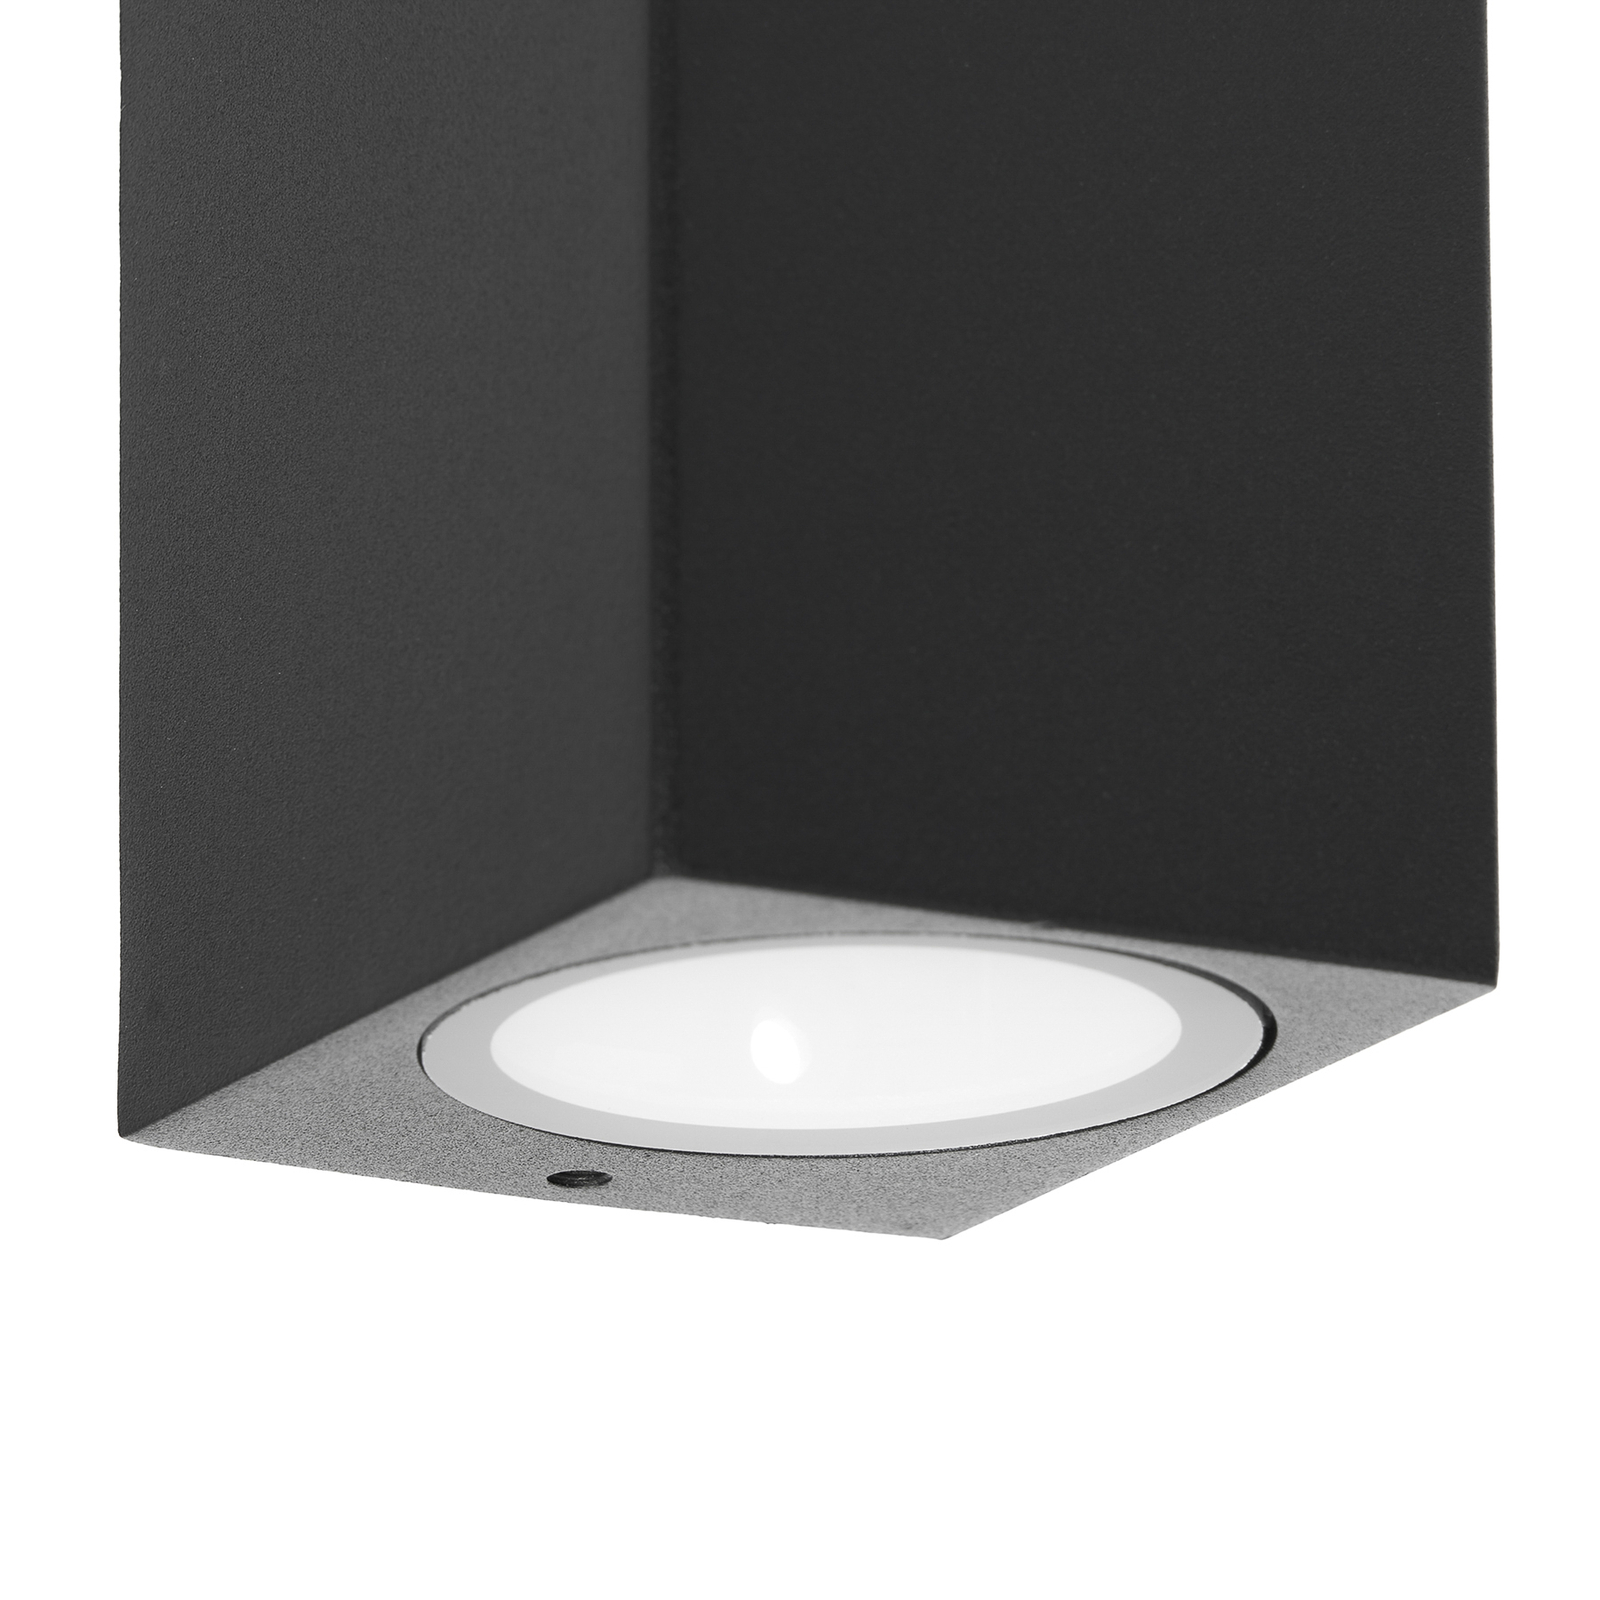 Prios kültéri fali lámpa Tetje, fekete, szögletes, 16 cm, 4 darabos szett